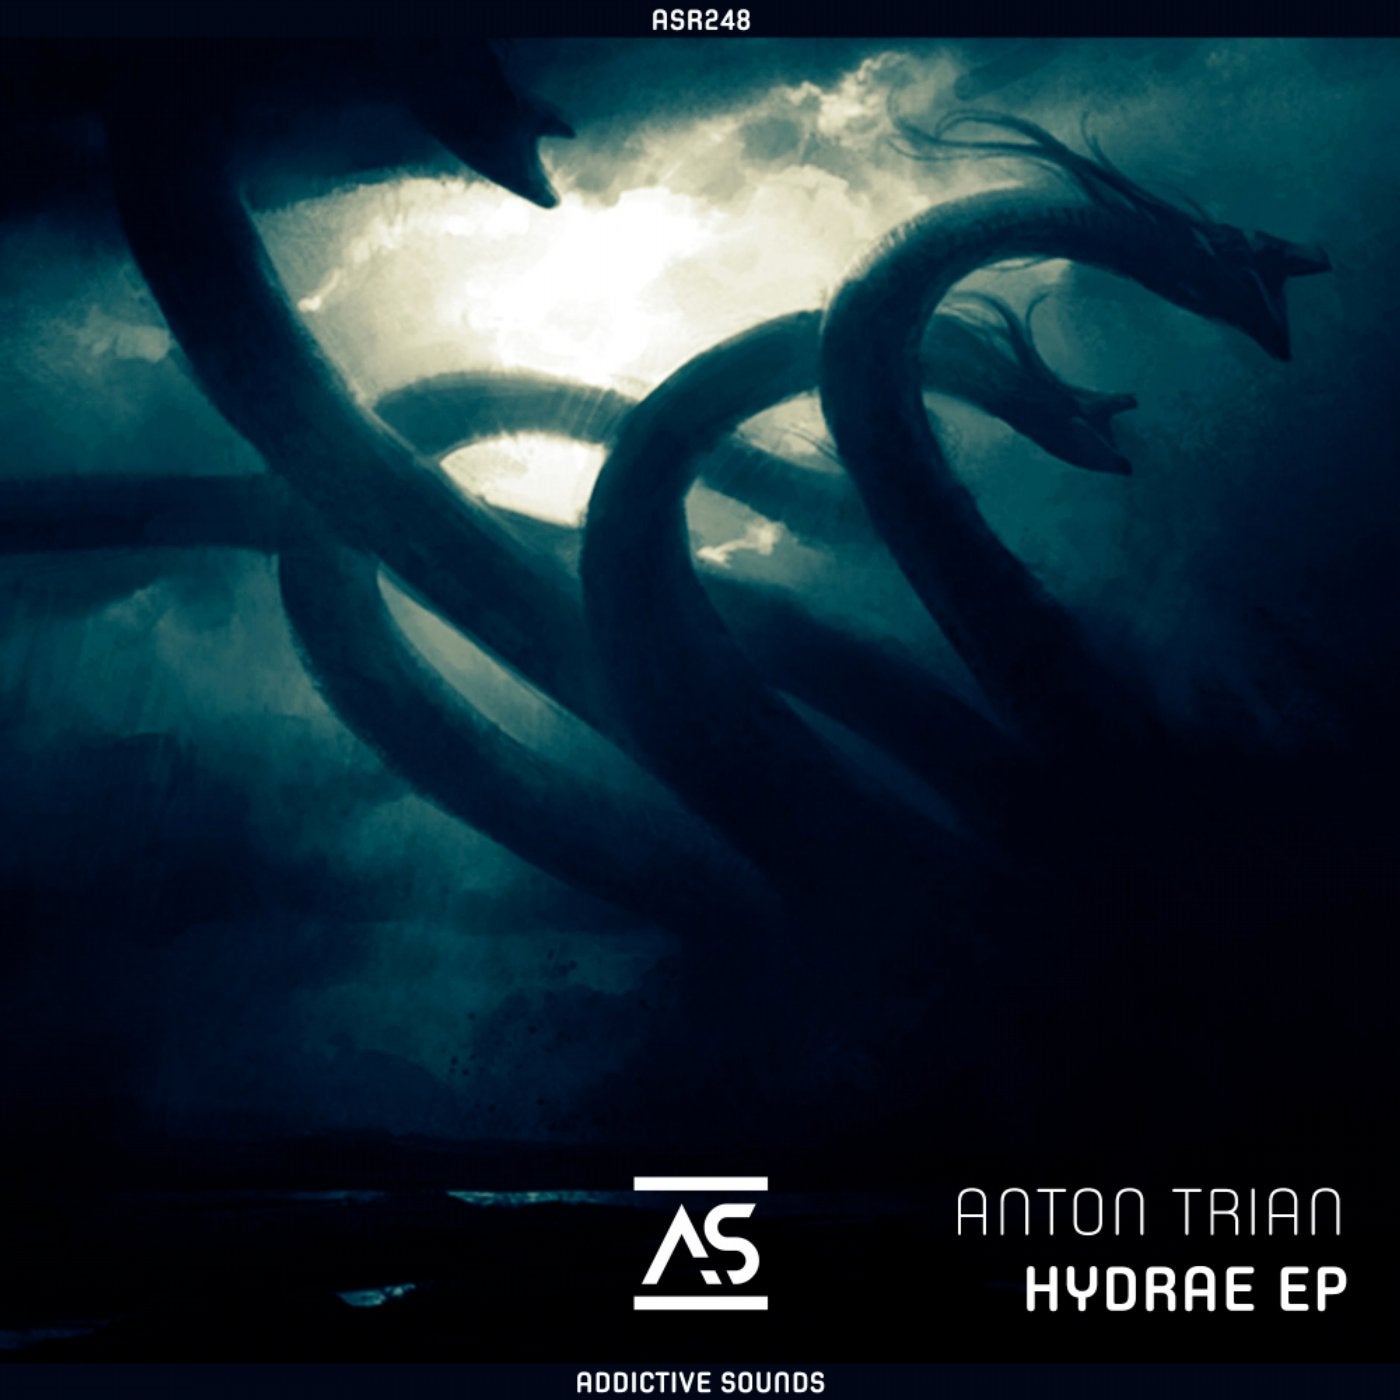 Hydrae EP